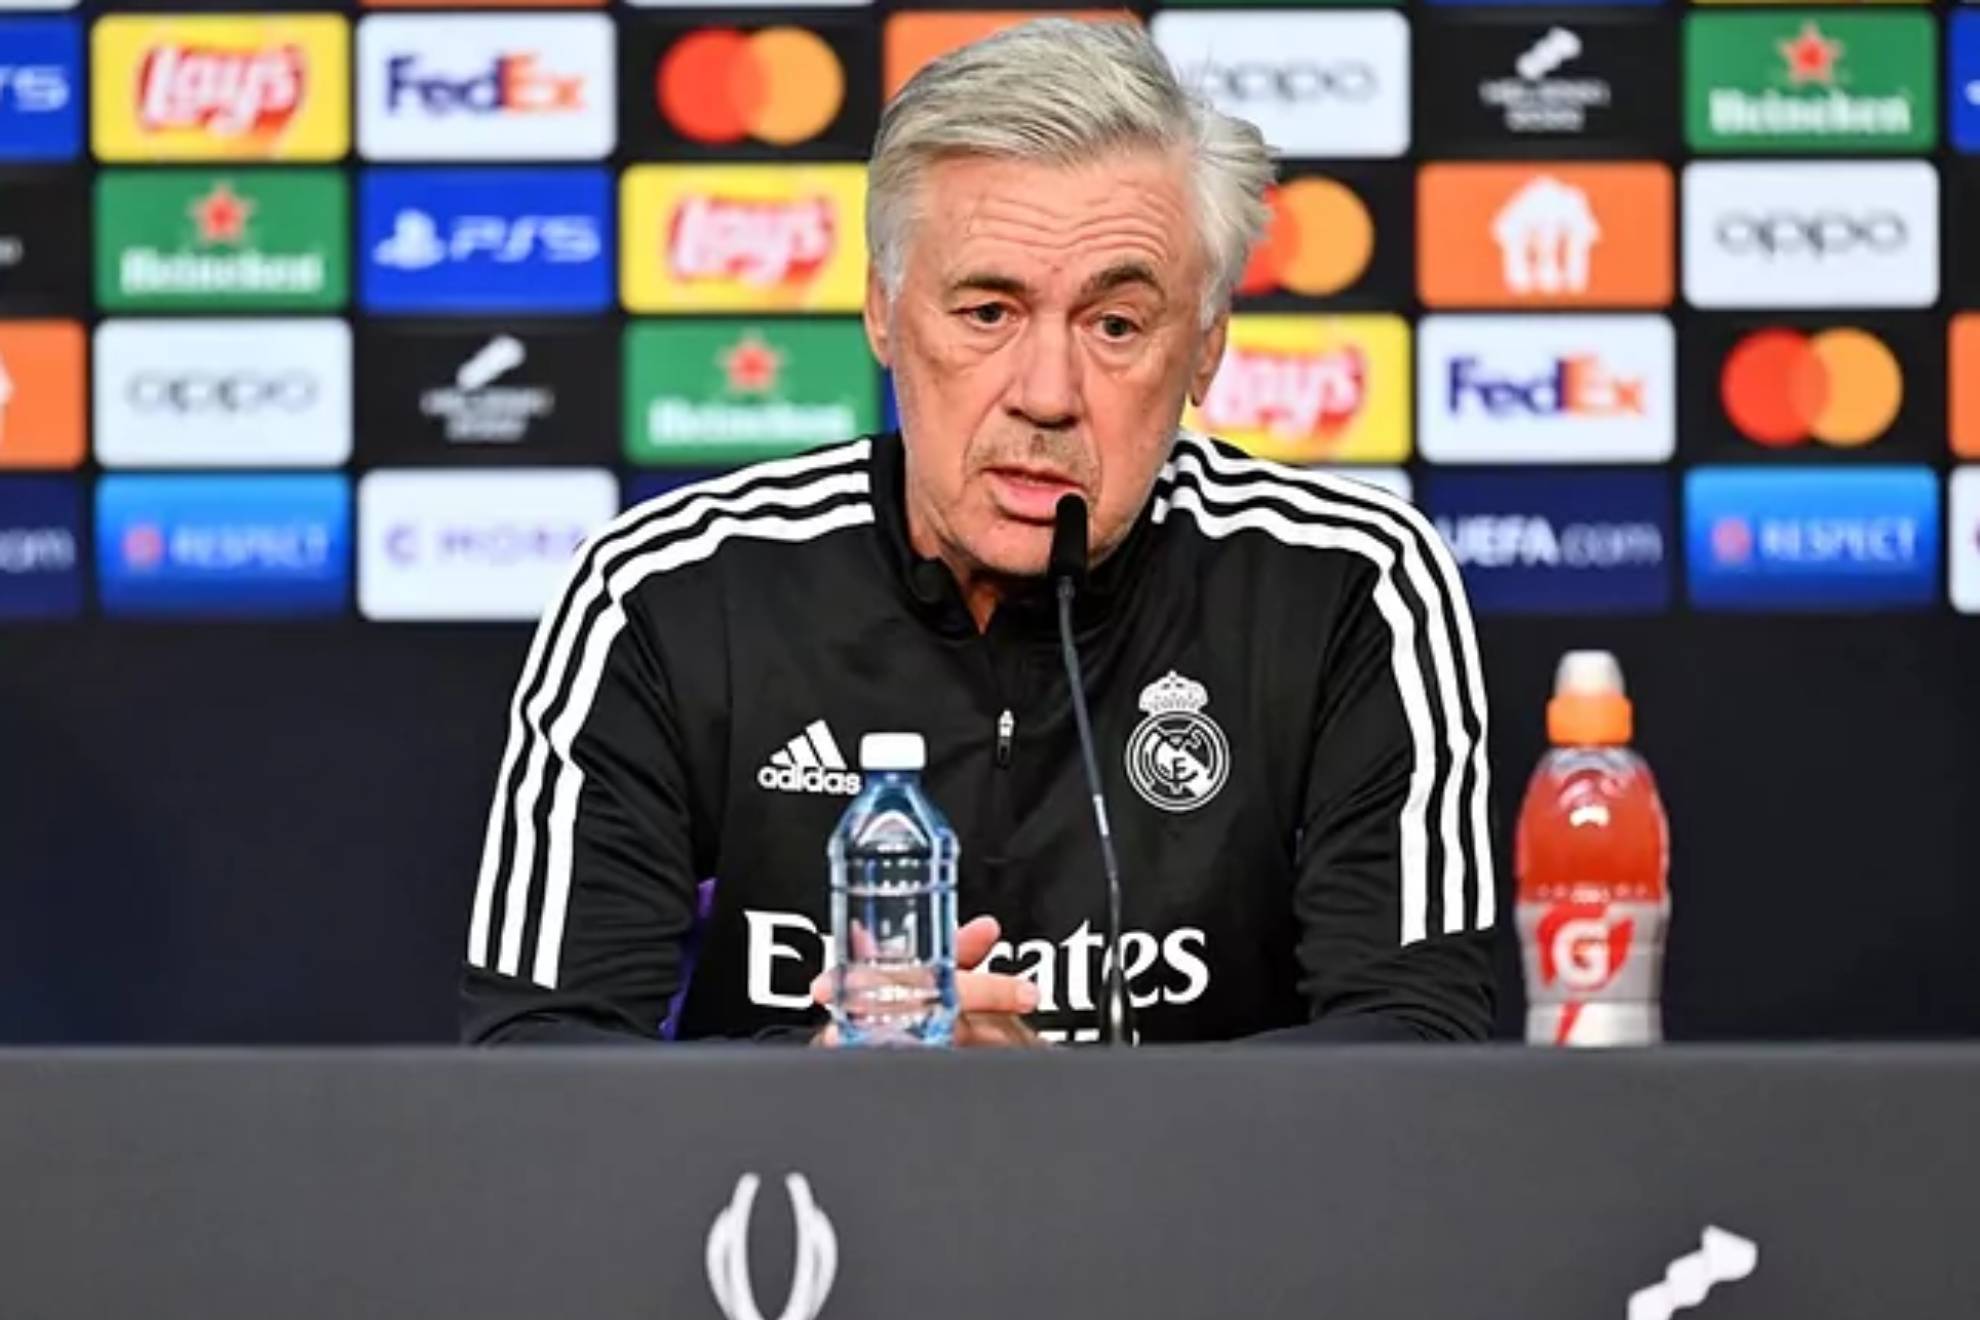 Real Madrid: Rueda de prensa de Ancelotti en directo previa al derbi